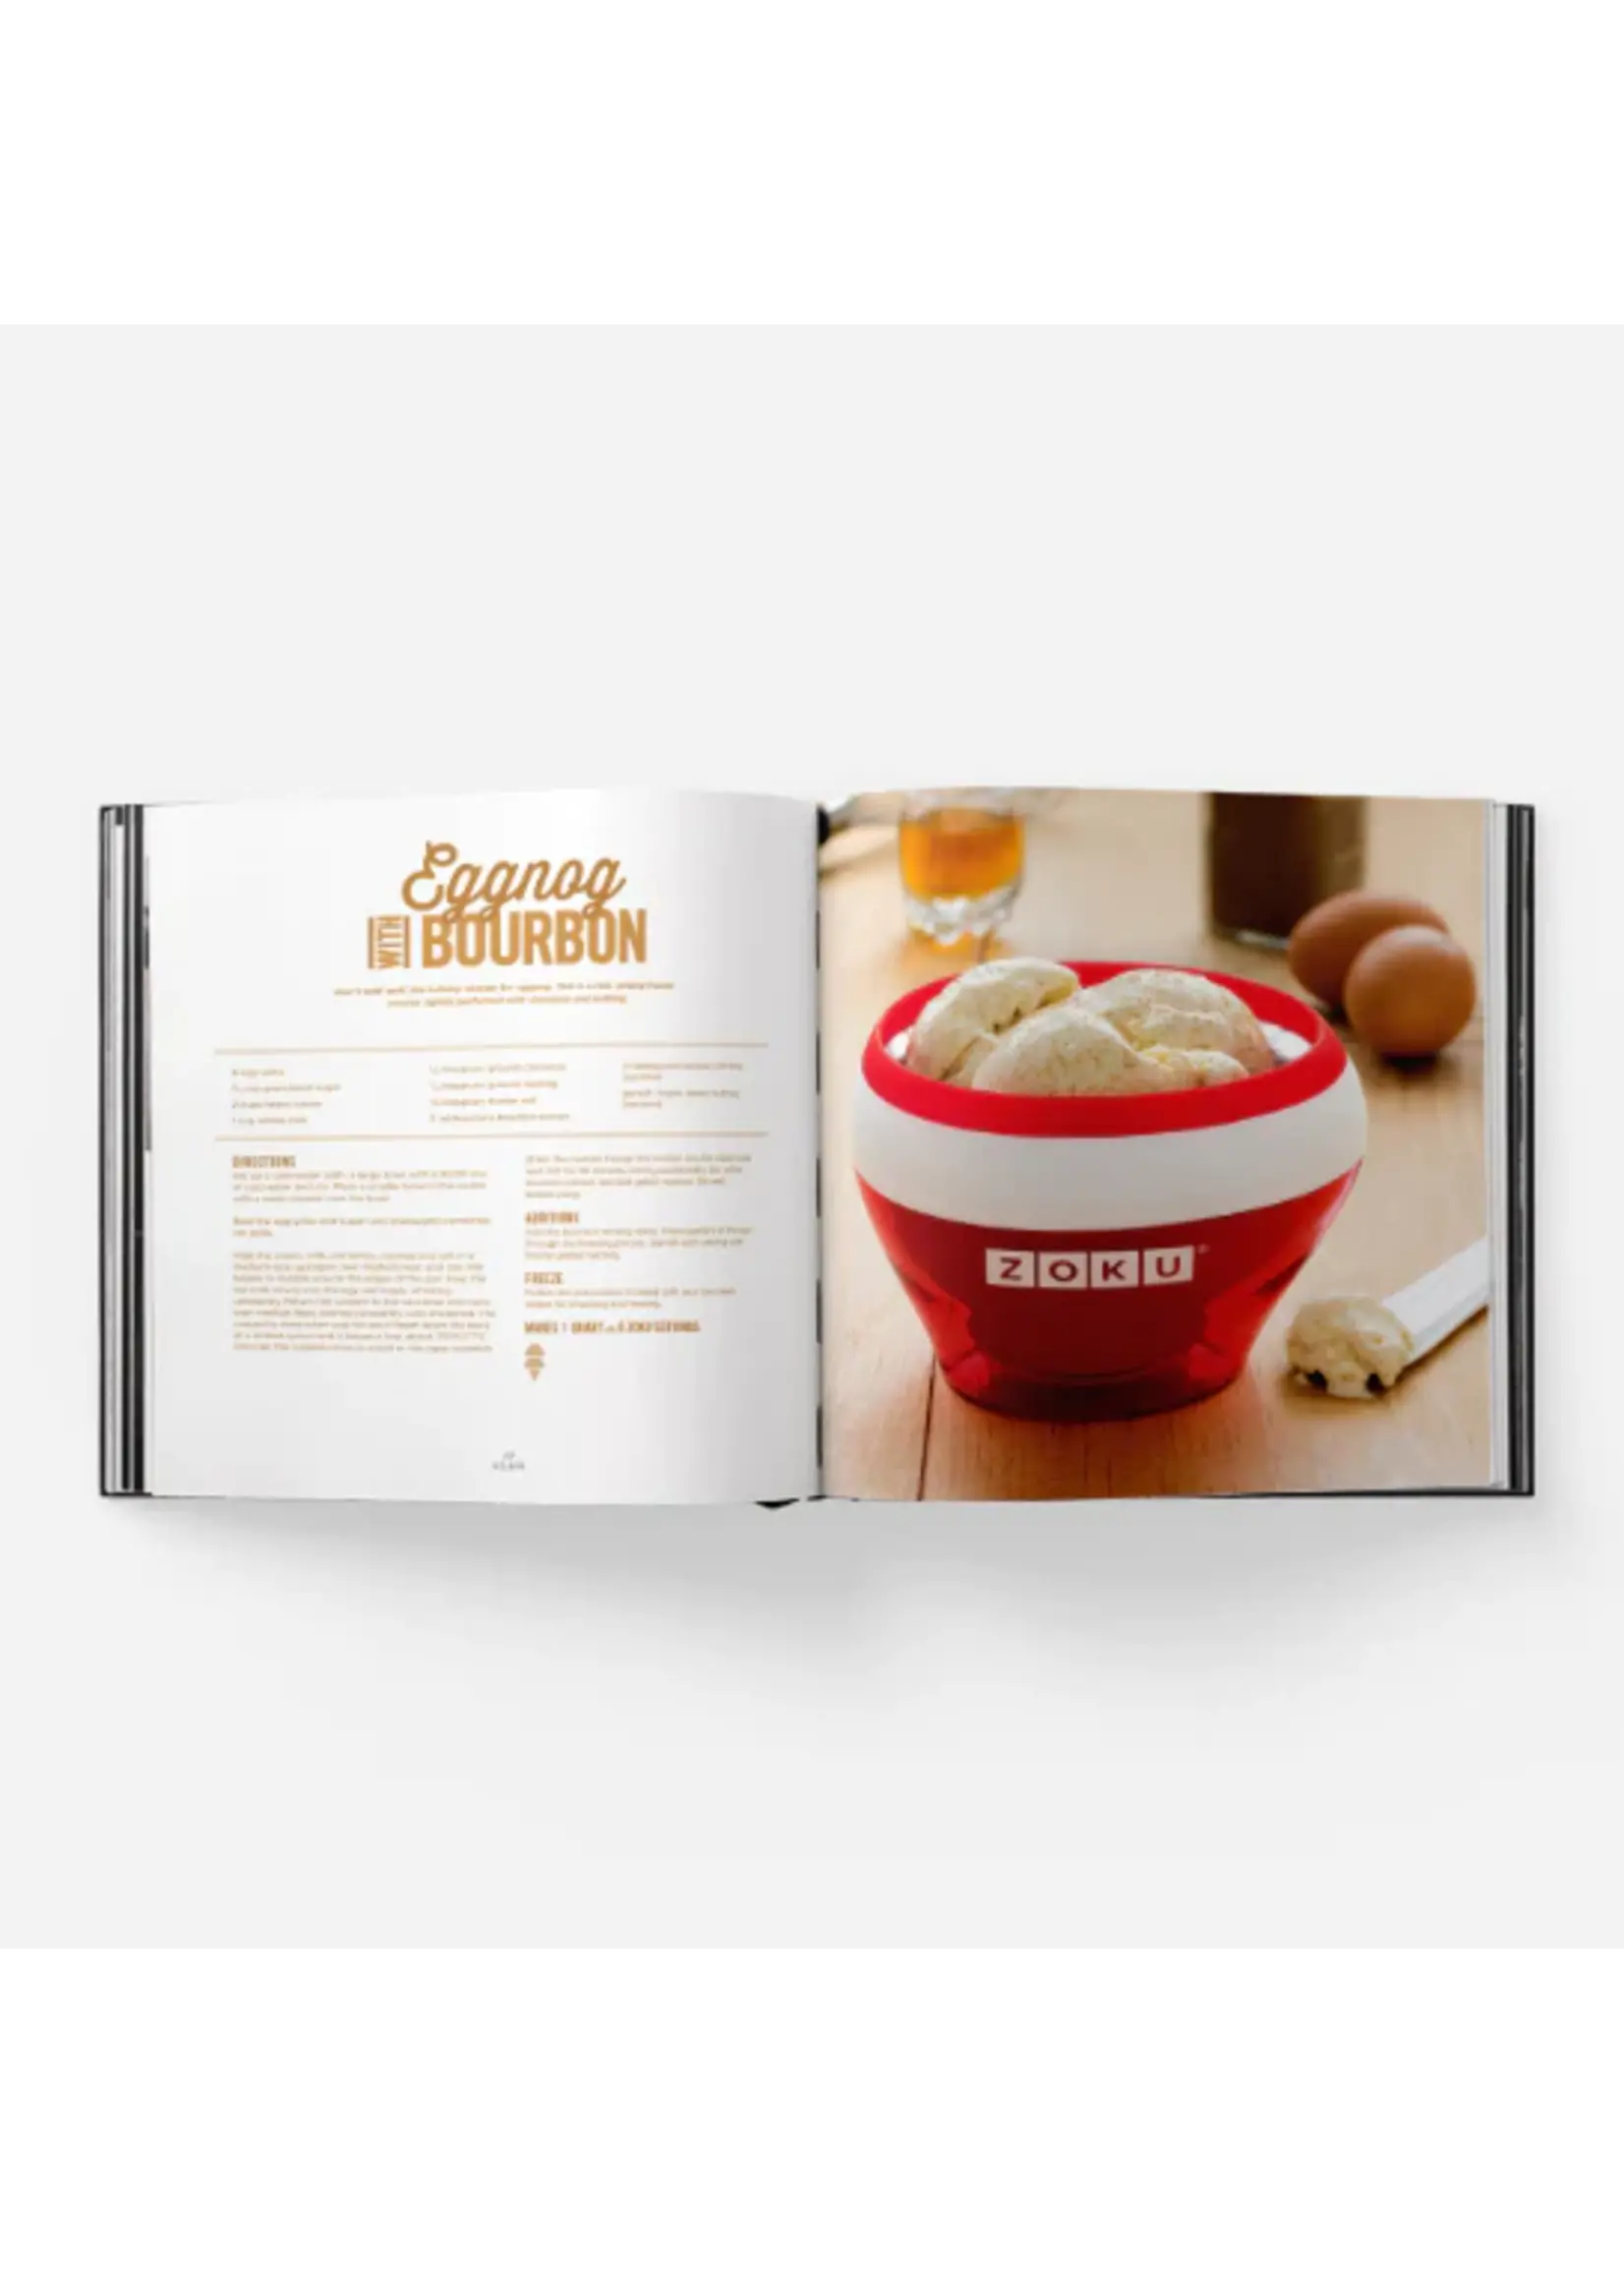 ZOKU- Endless Summer Ice Cream Recipe Book